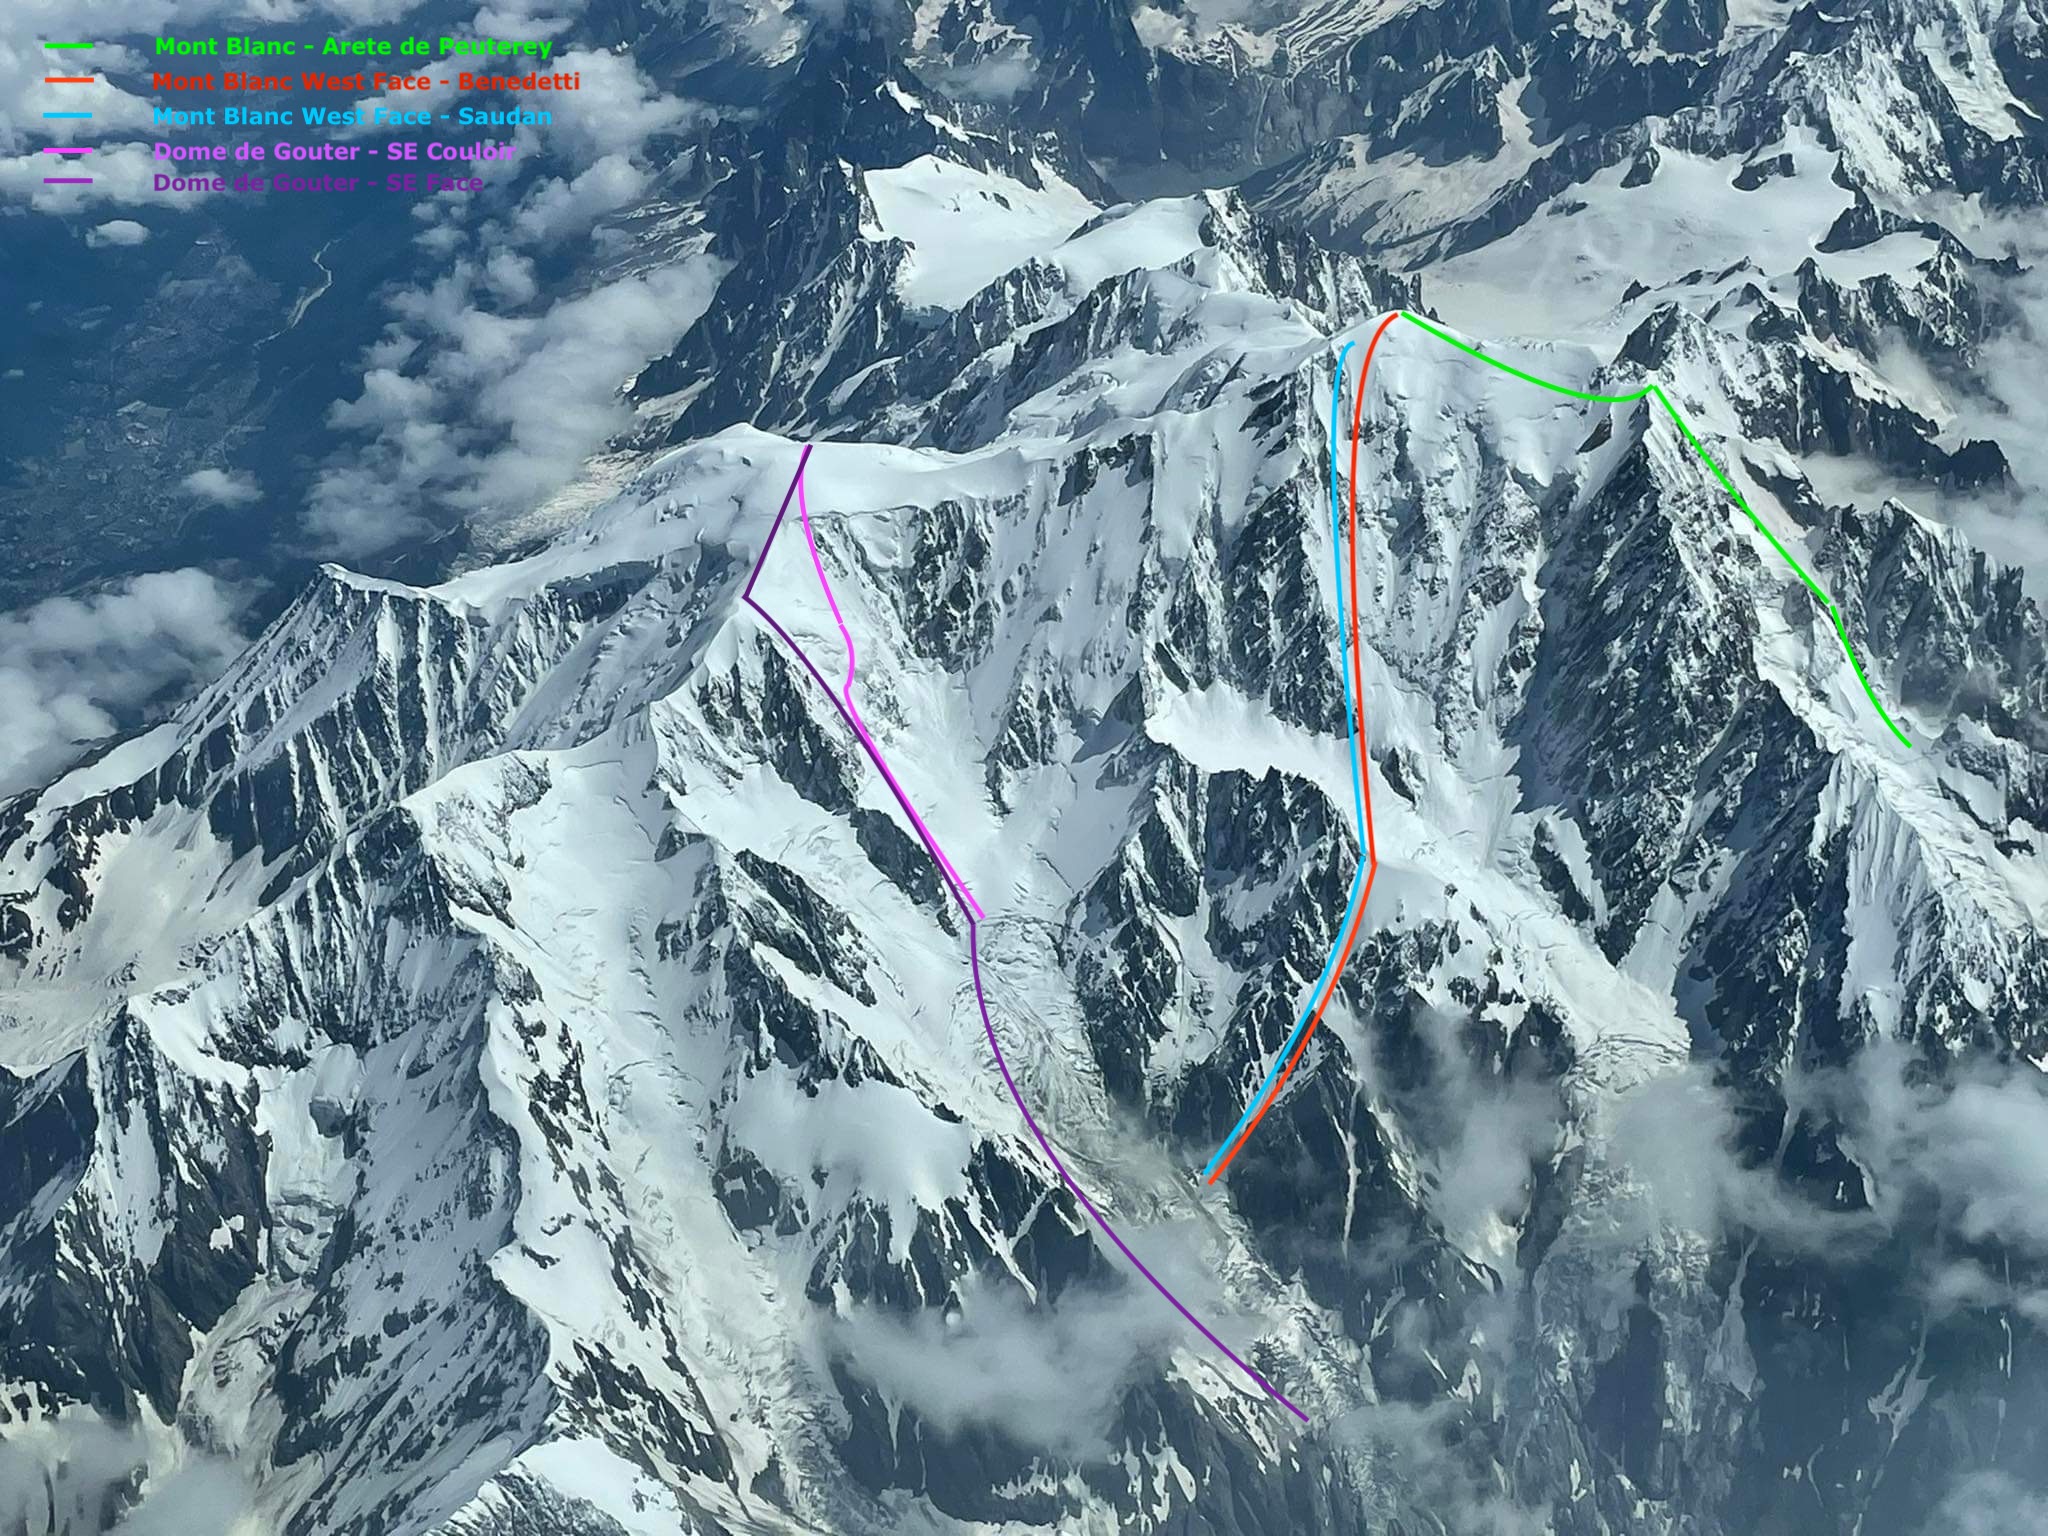 Mont Blanc ski descents